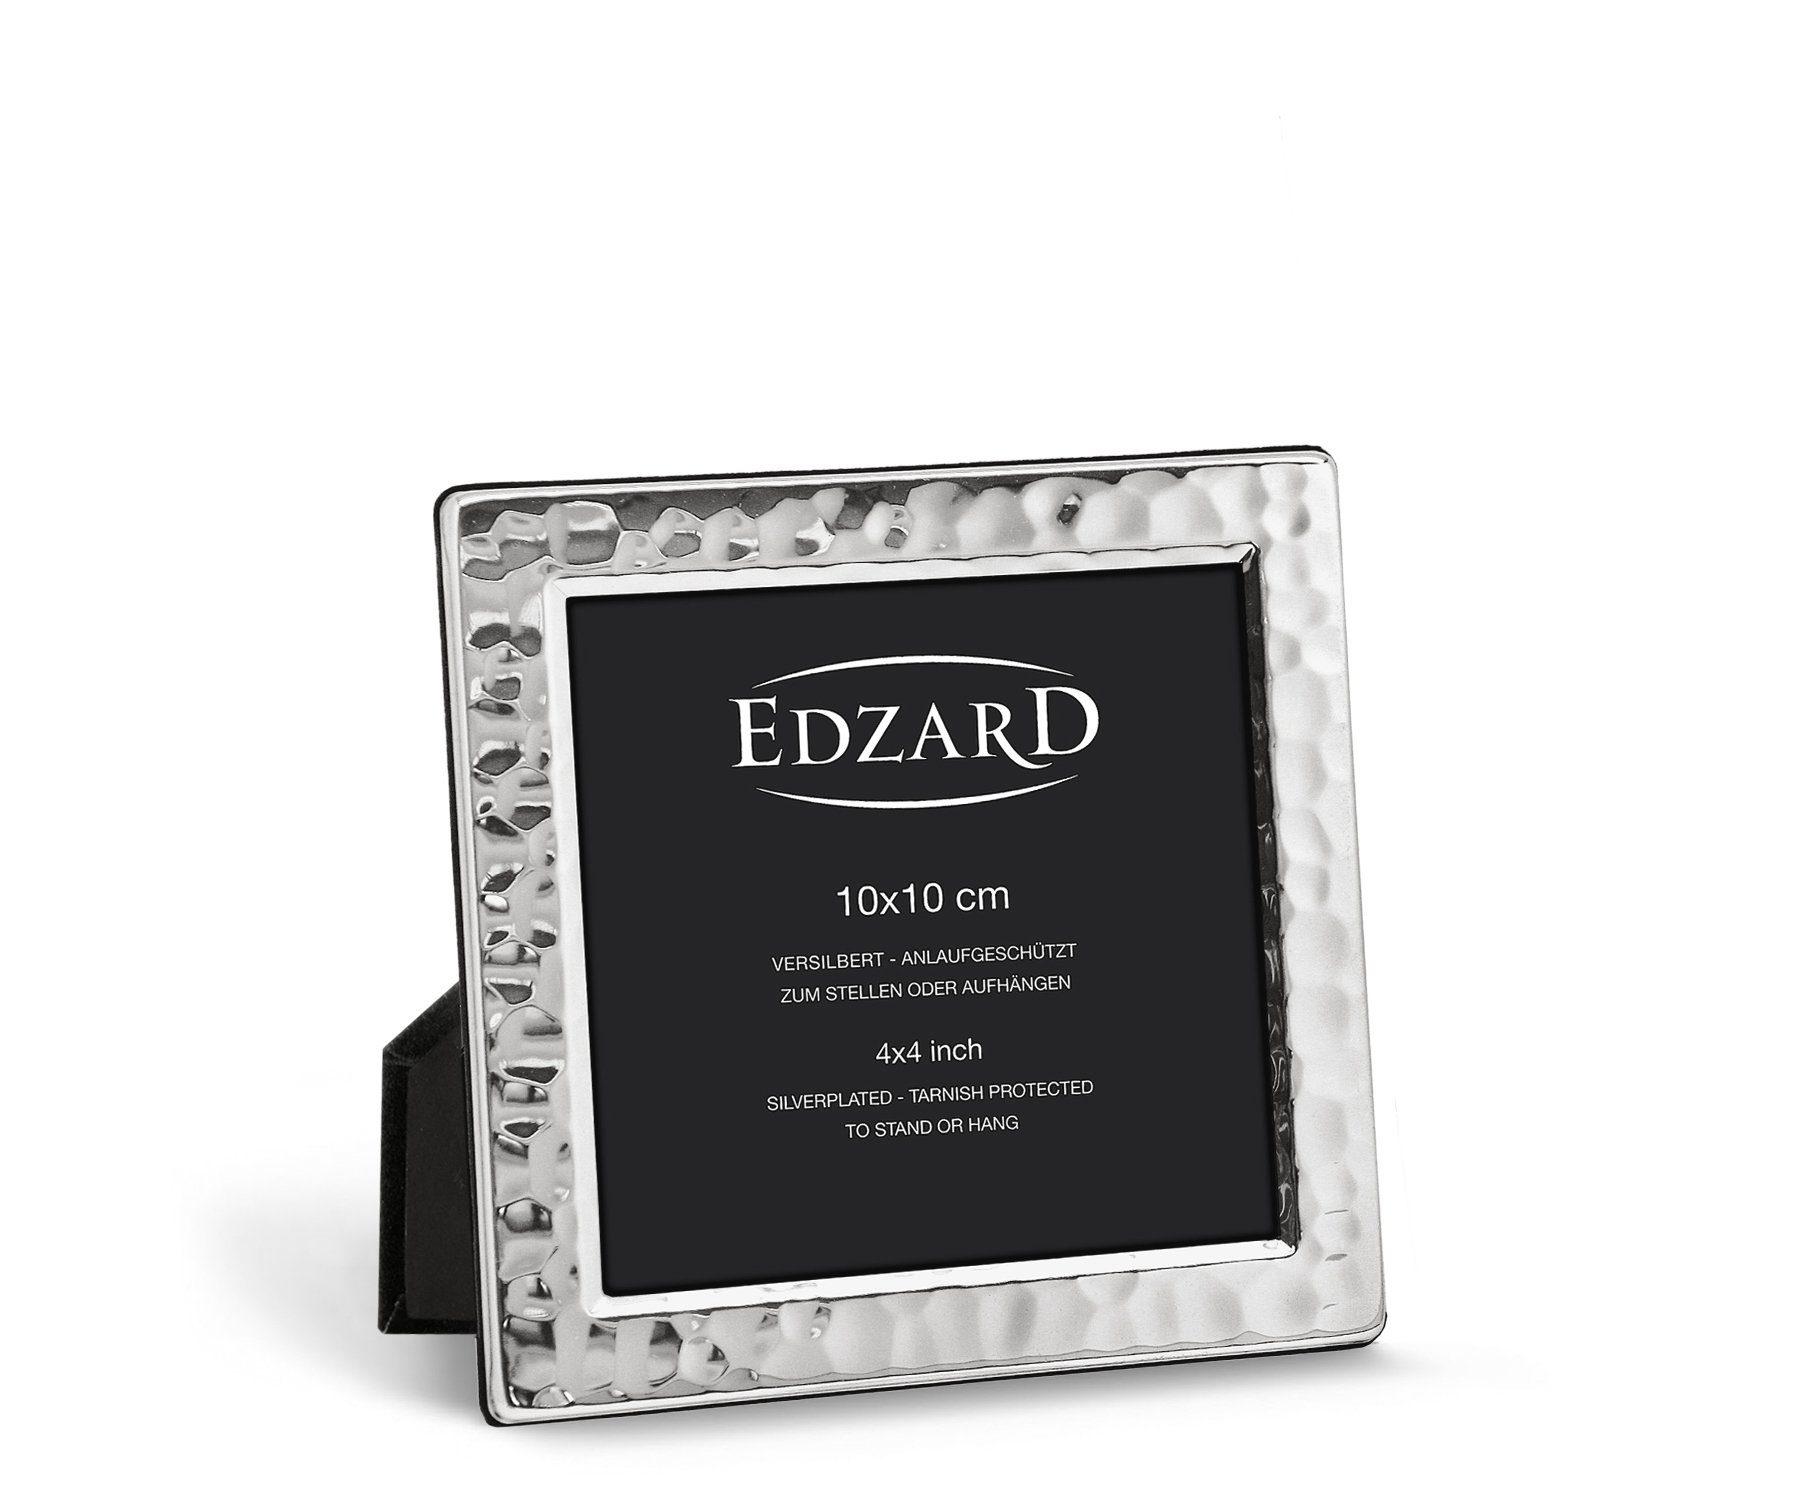 EDZARD Bilderrahmen Pavia, für 10x10 cm Foto - edel versilberter & anlaufgeschützt